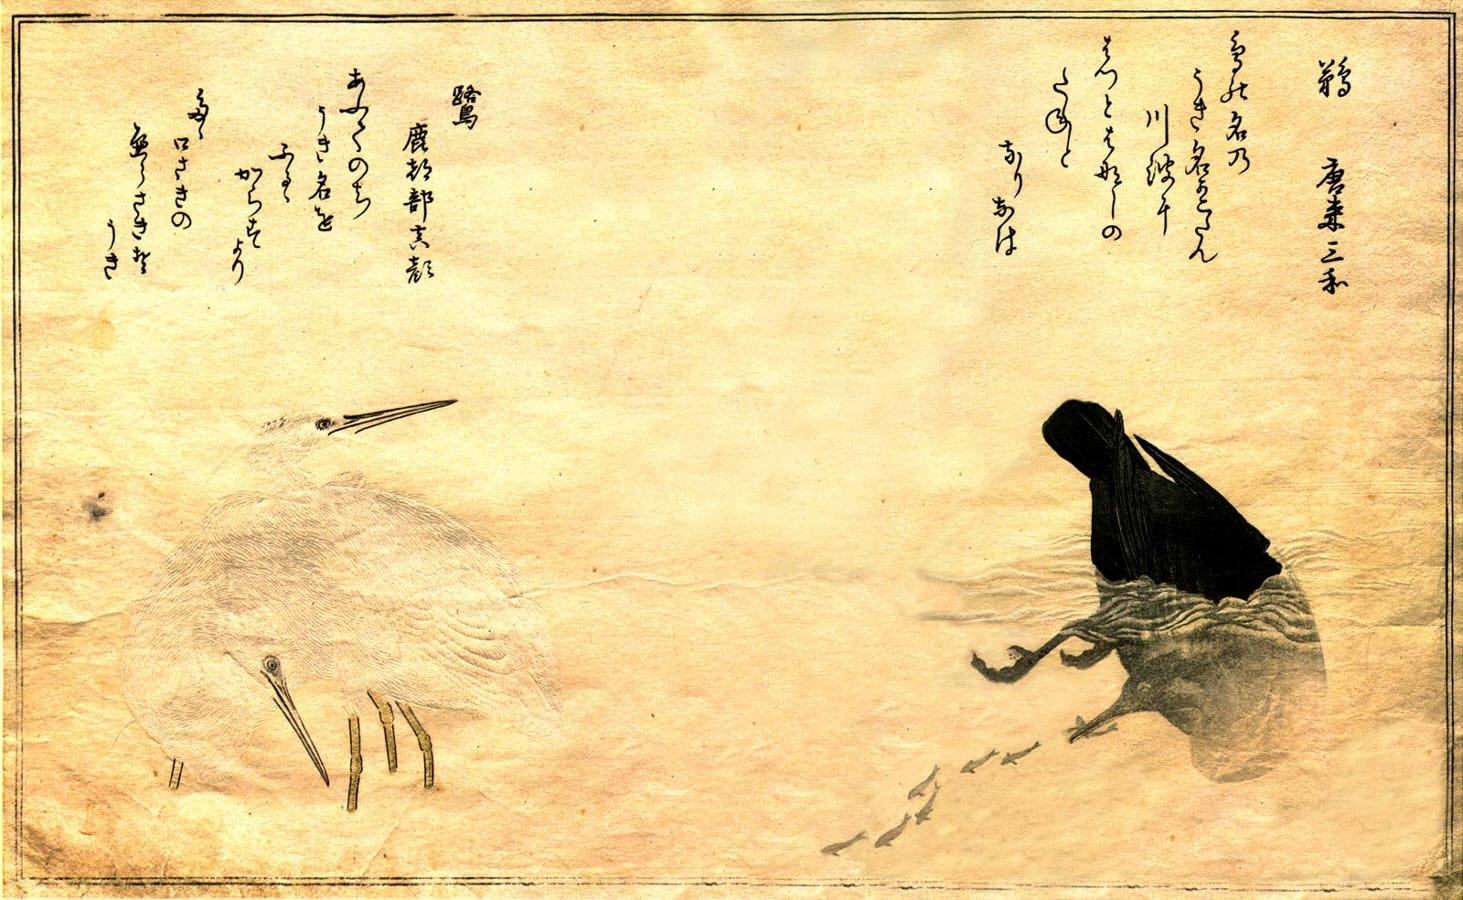 japanische schreibtapete,krähe,rabe,kalligraphie,krähe wie vogel,schriftart